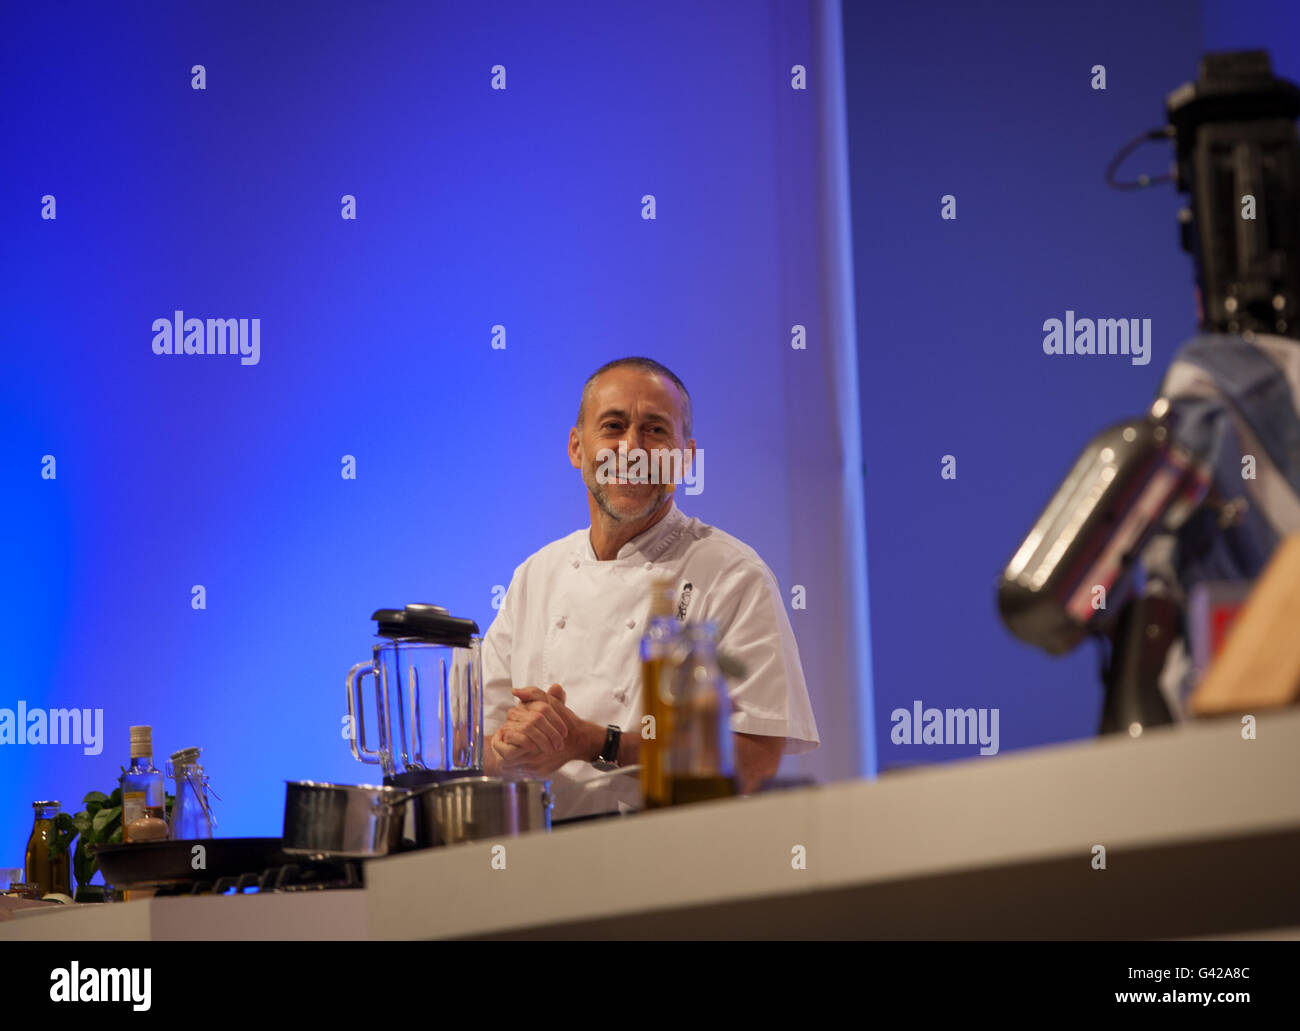 Birmingham, Reino Unido. 18 de junio de 2016. Michel Roux jr haciendo una demostración de cocina en el Teatro Super Crédito: Steven roe/Alamy Live News Foto de stock